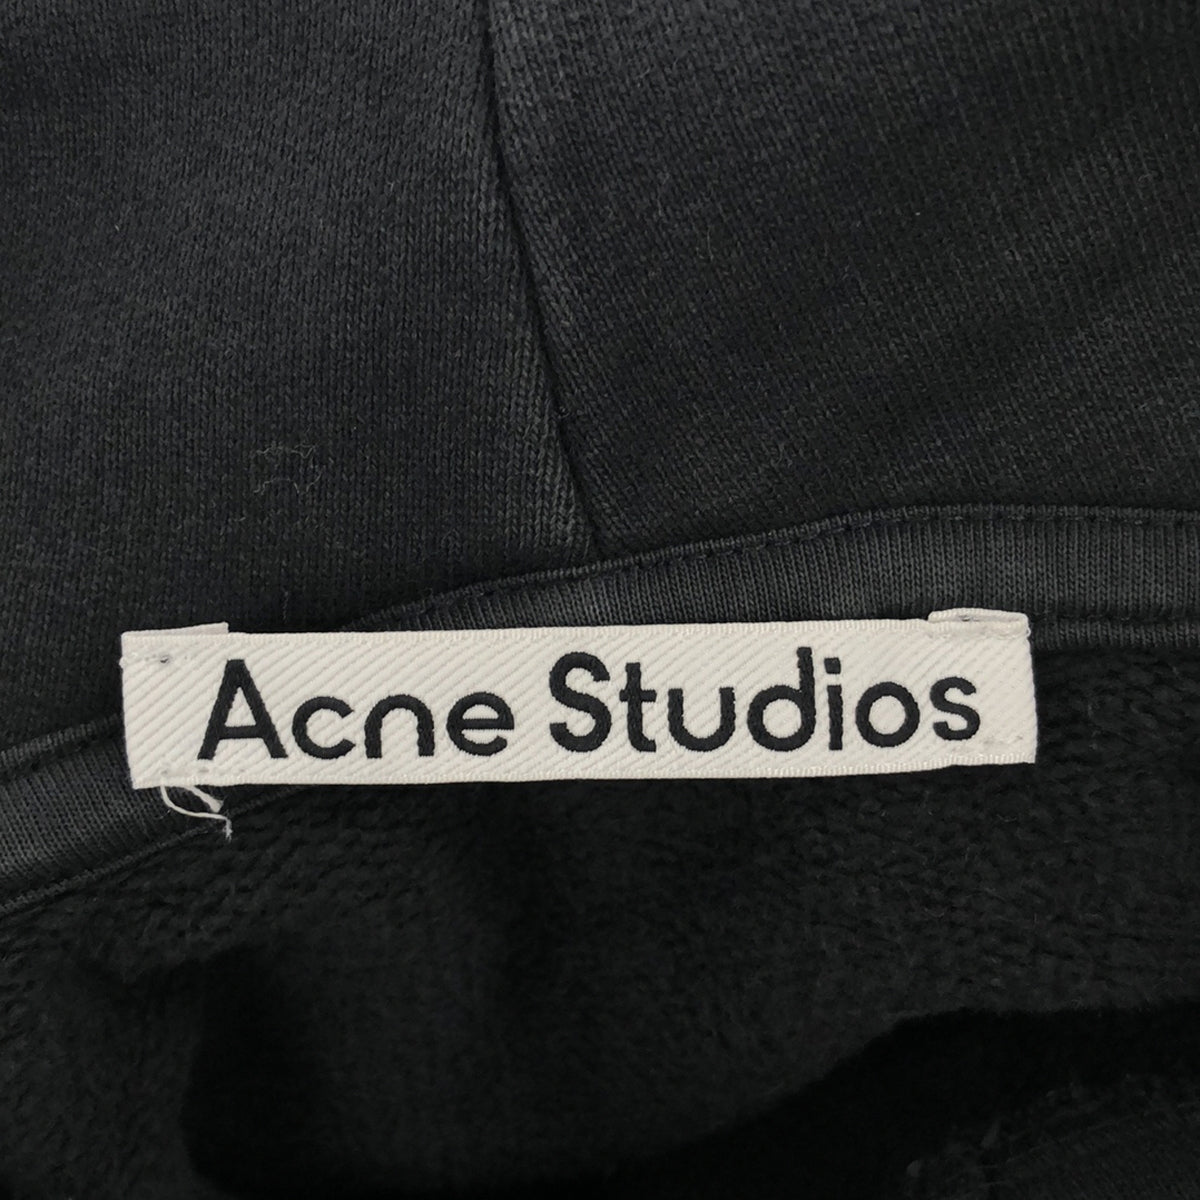 Acne Studios / アクネストゥディオズ | ロゴプリント オーバーサイズ スウェットパーカー | S | ブラック | メンズ